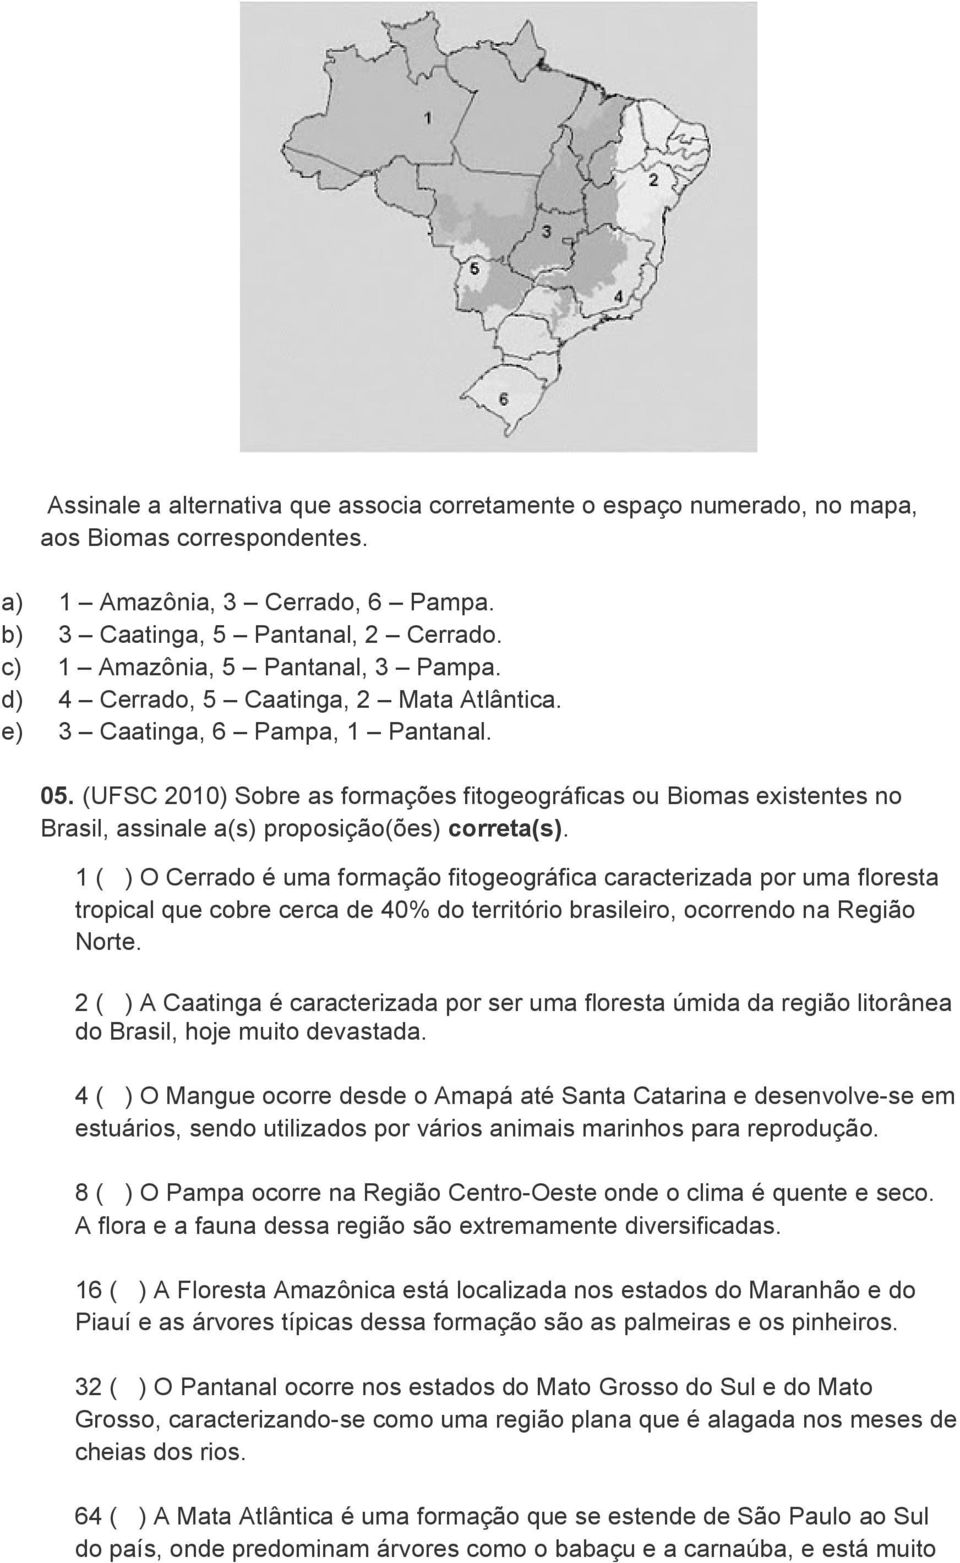 (UFSC 2010) Sobre as formações fitogeográficas ou Biomas existentes no Brasil, assinale a(s) proposição(ões) correta(s).